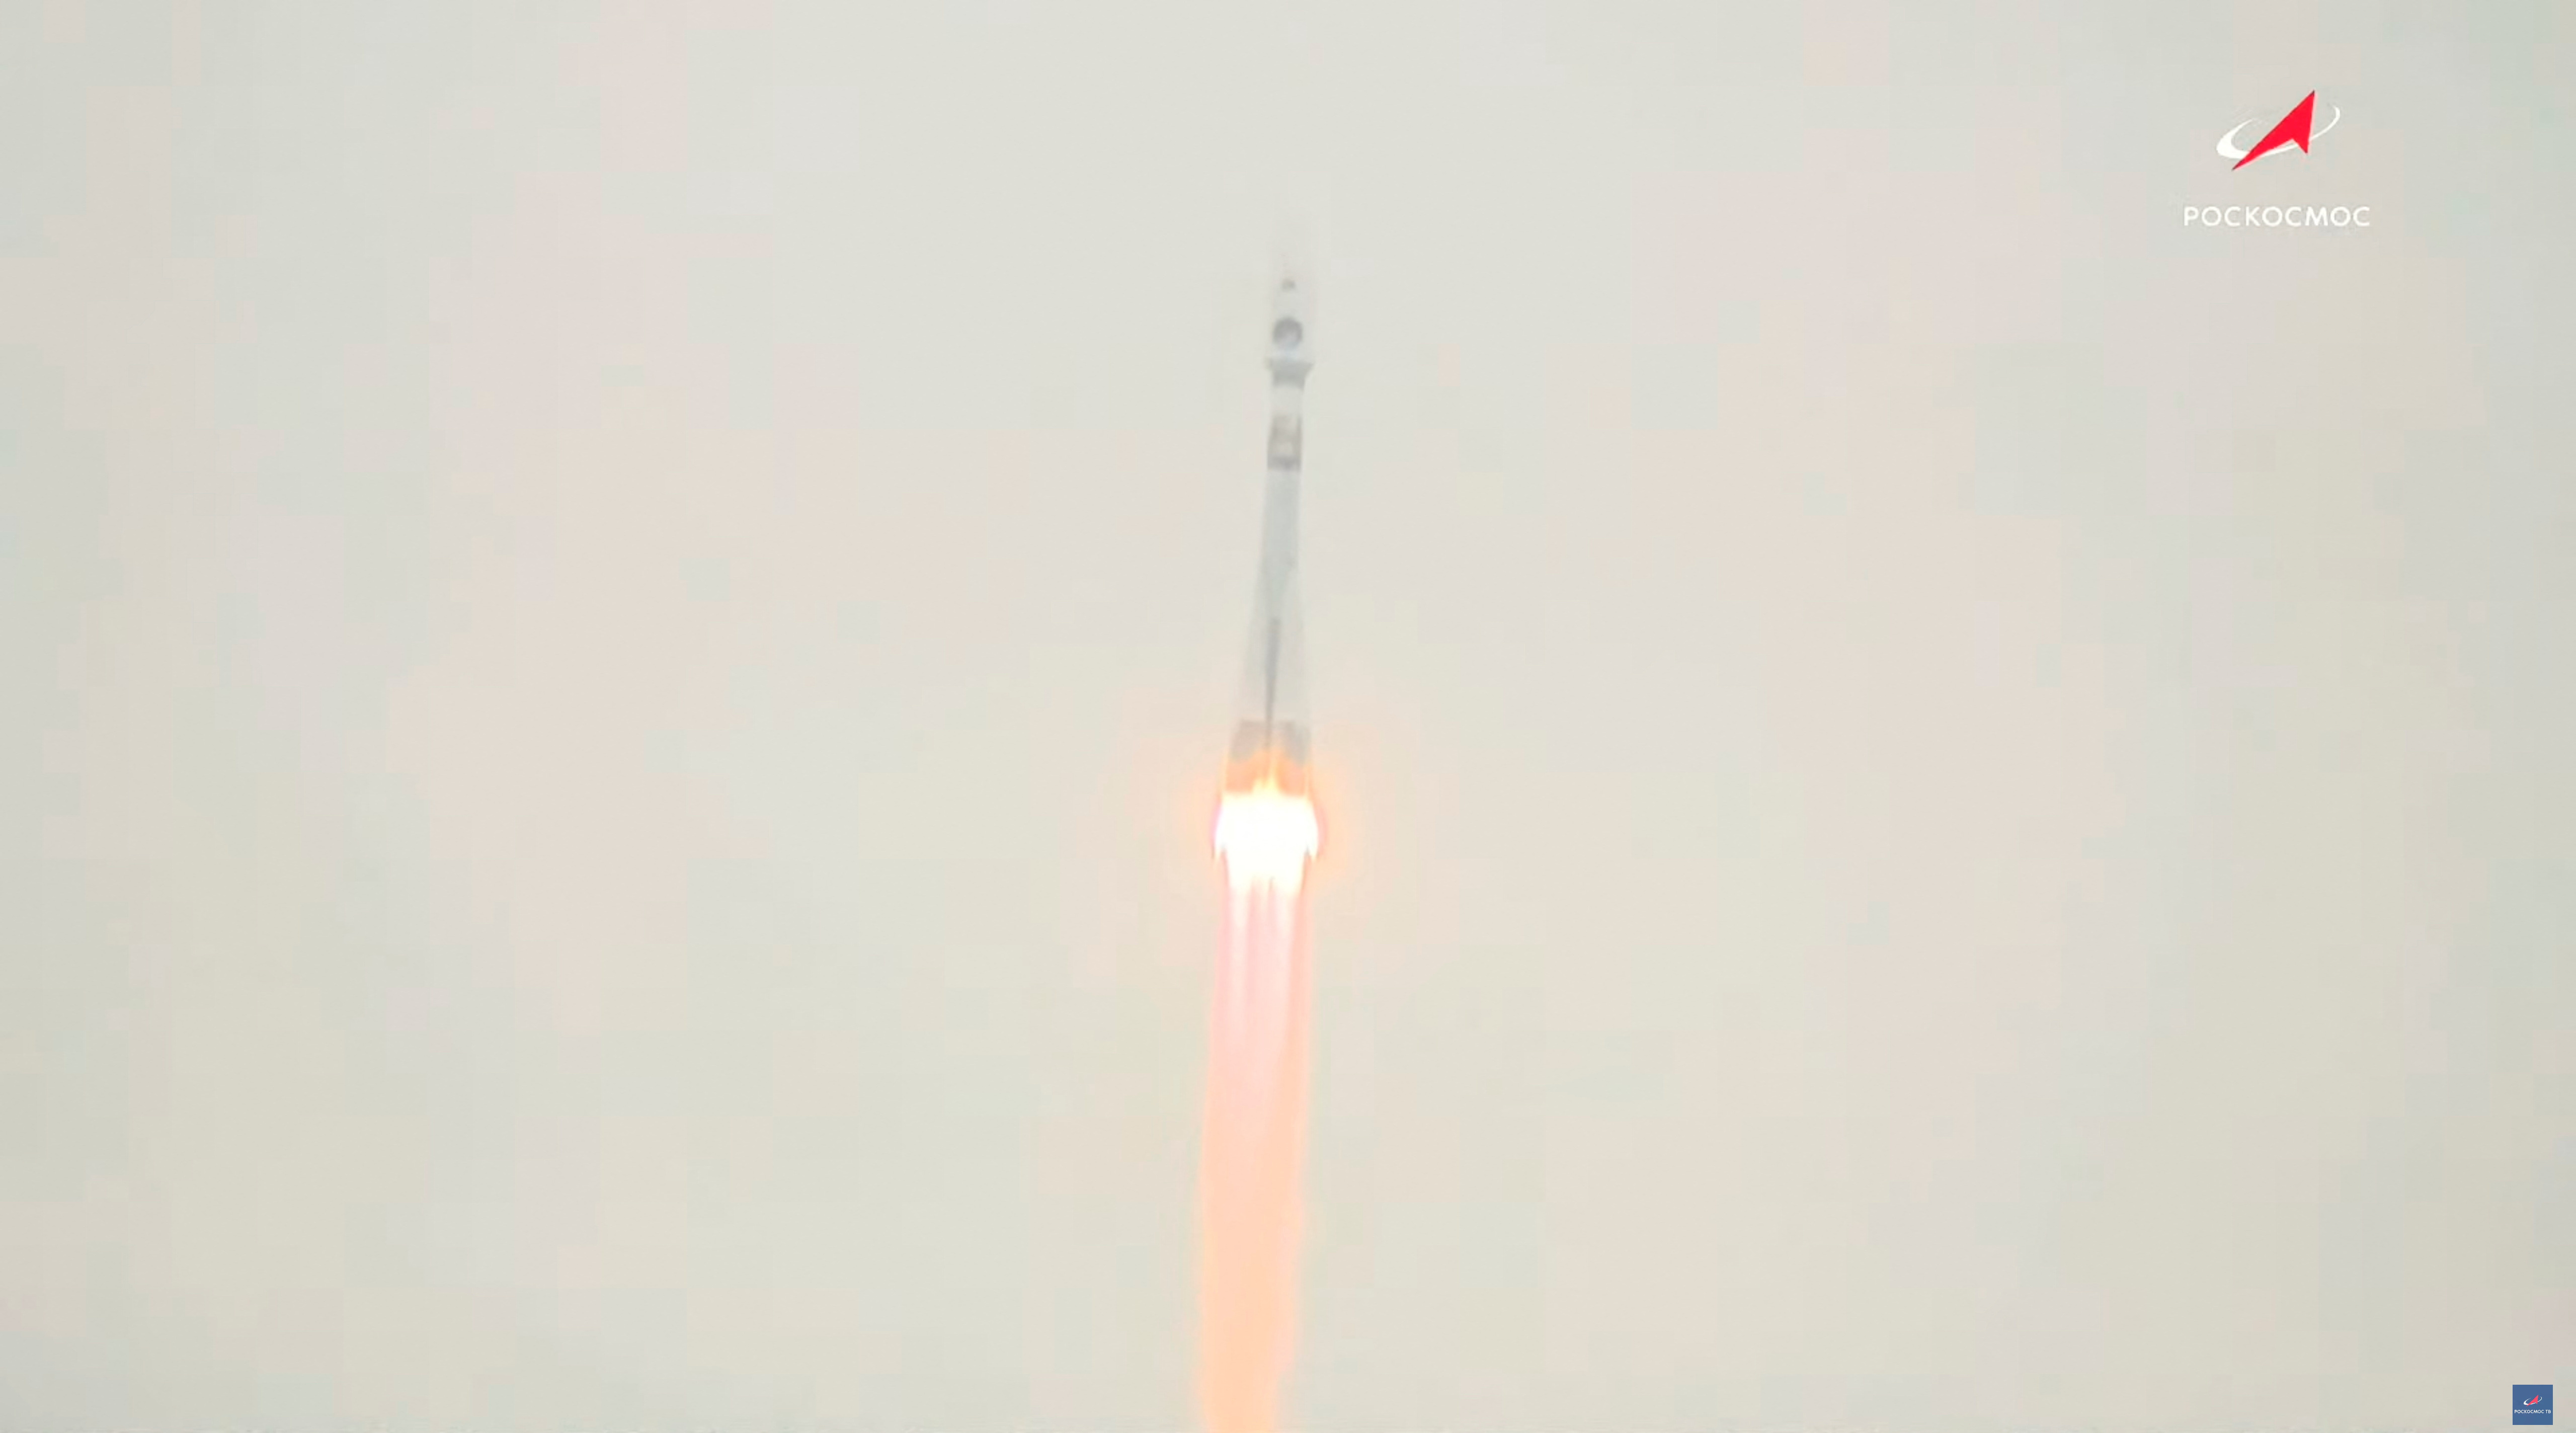 Rocket booster with Luna-25 lunar lander blasts off at Vostochny Cosmodrome